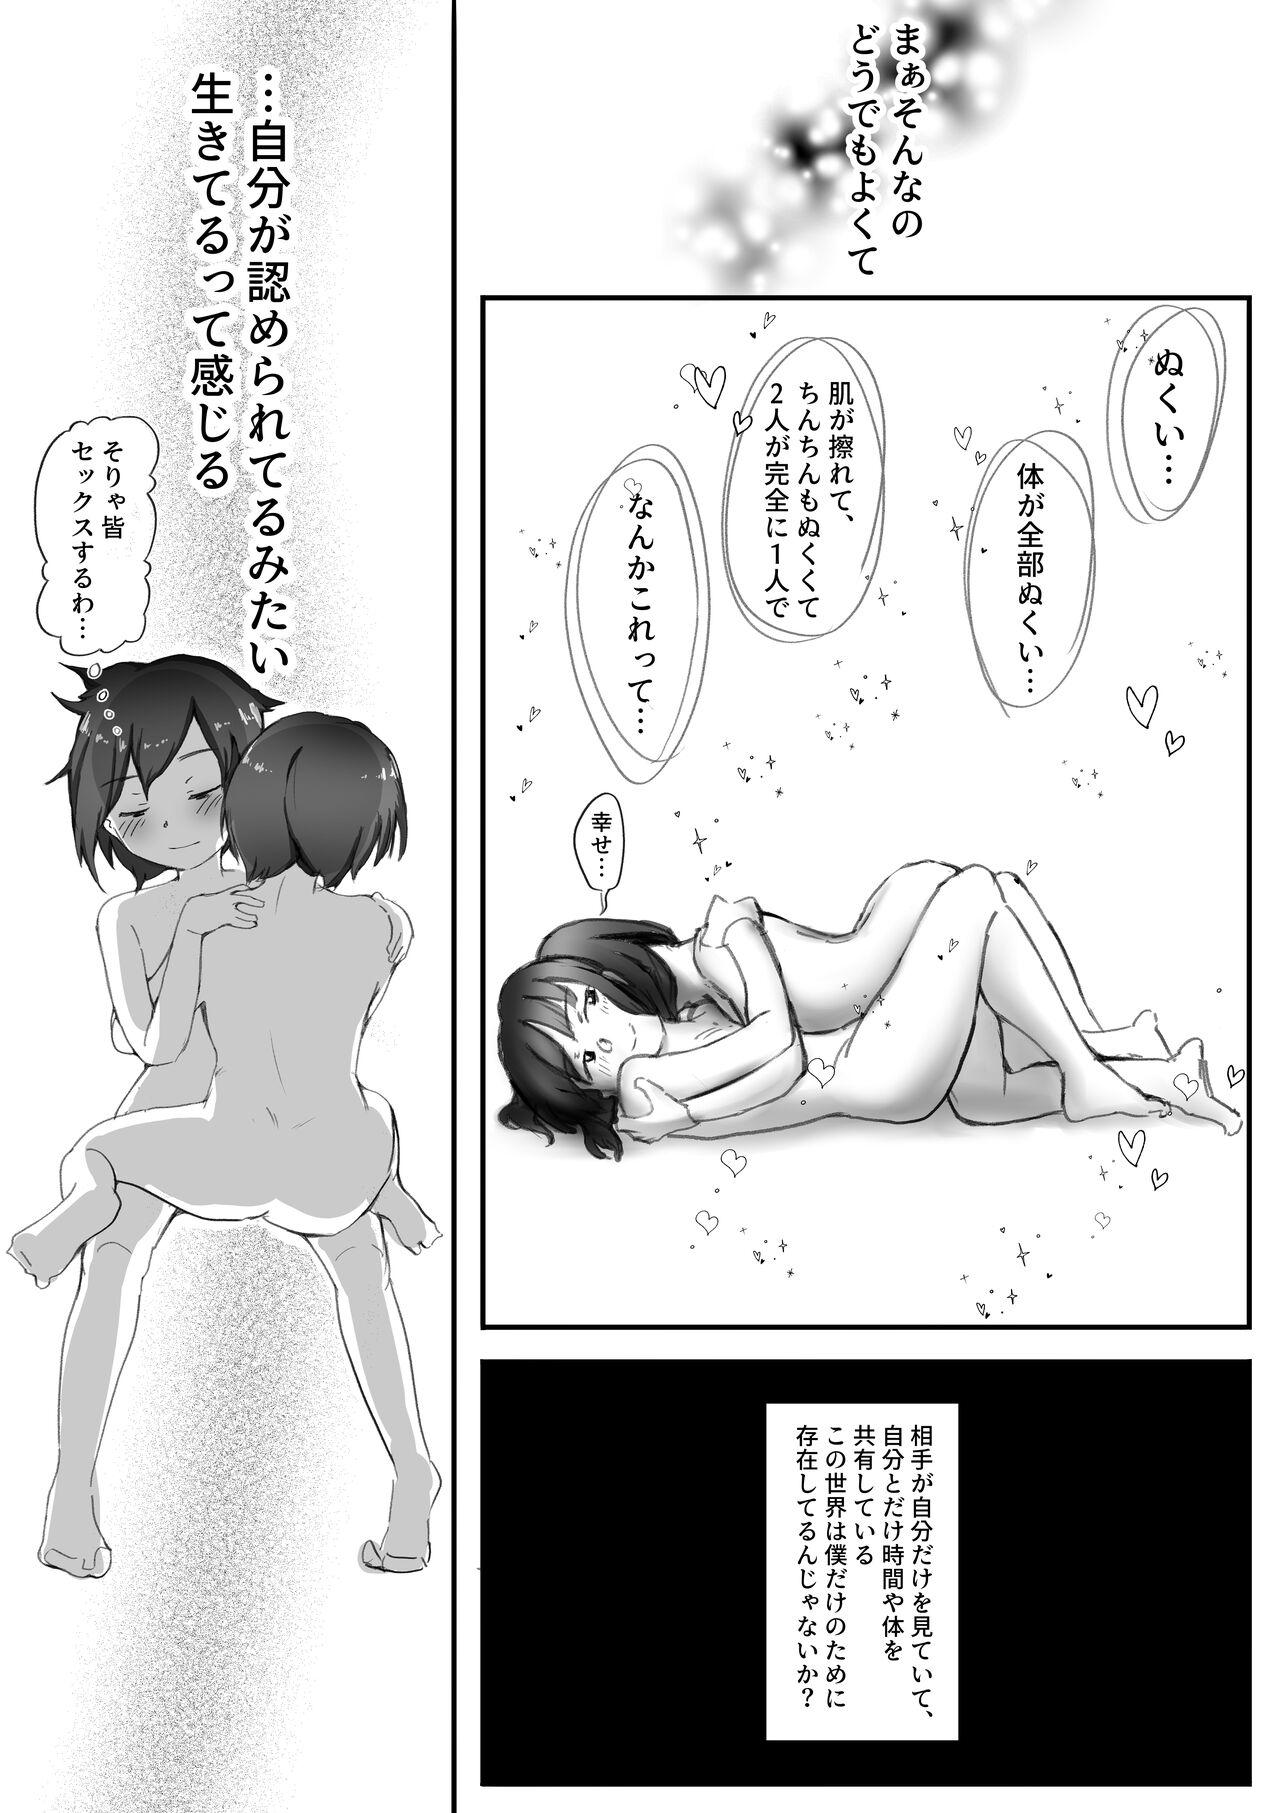 【風俗レポ漫画】飛田新地で童貞を捨てた話 22